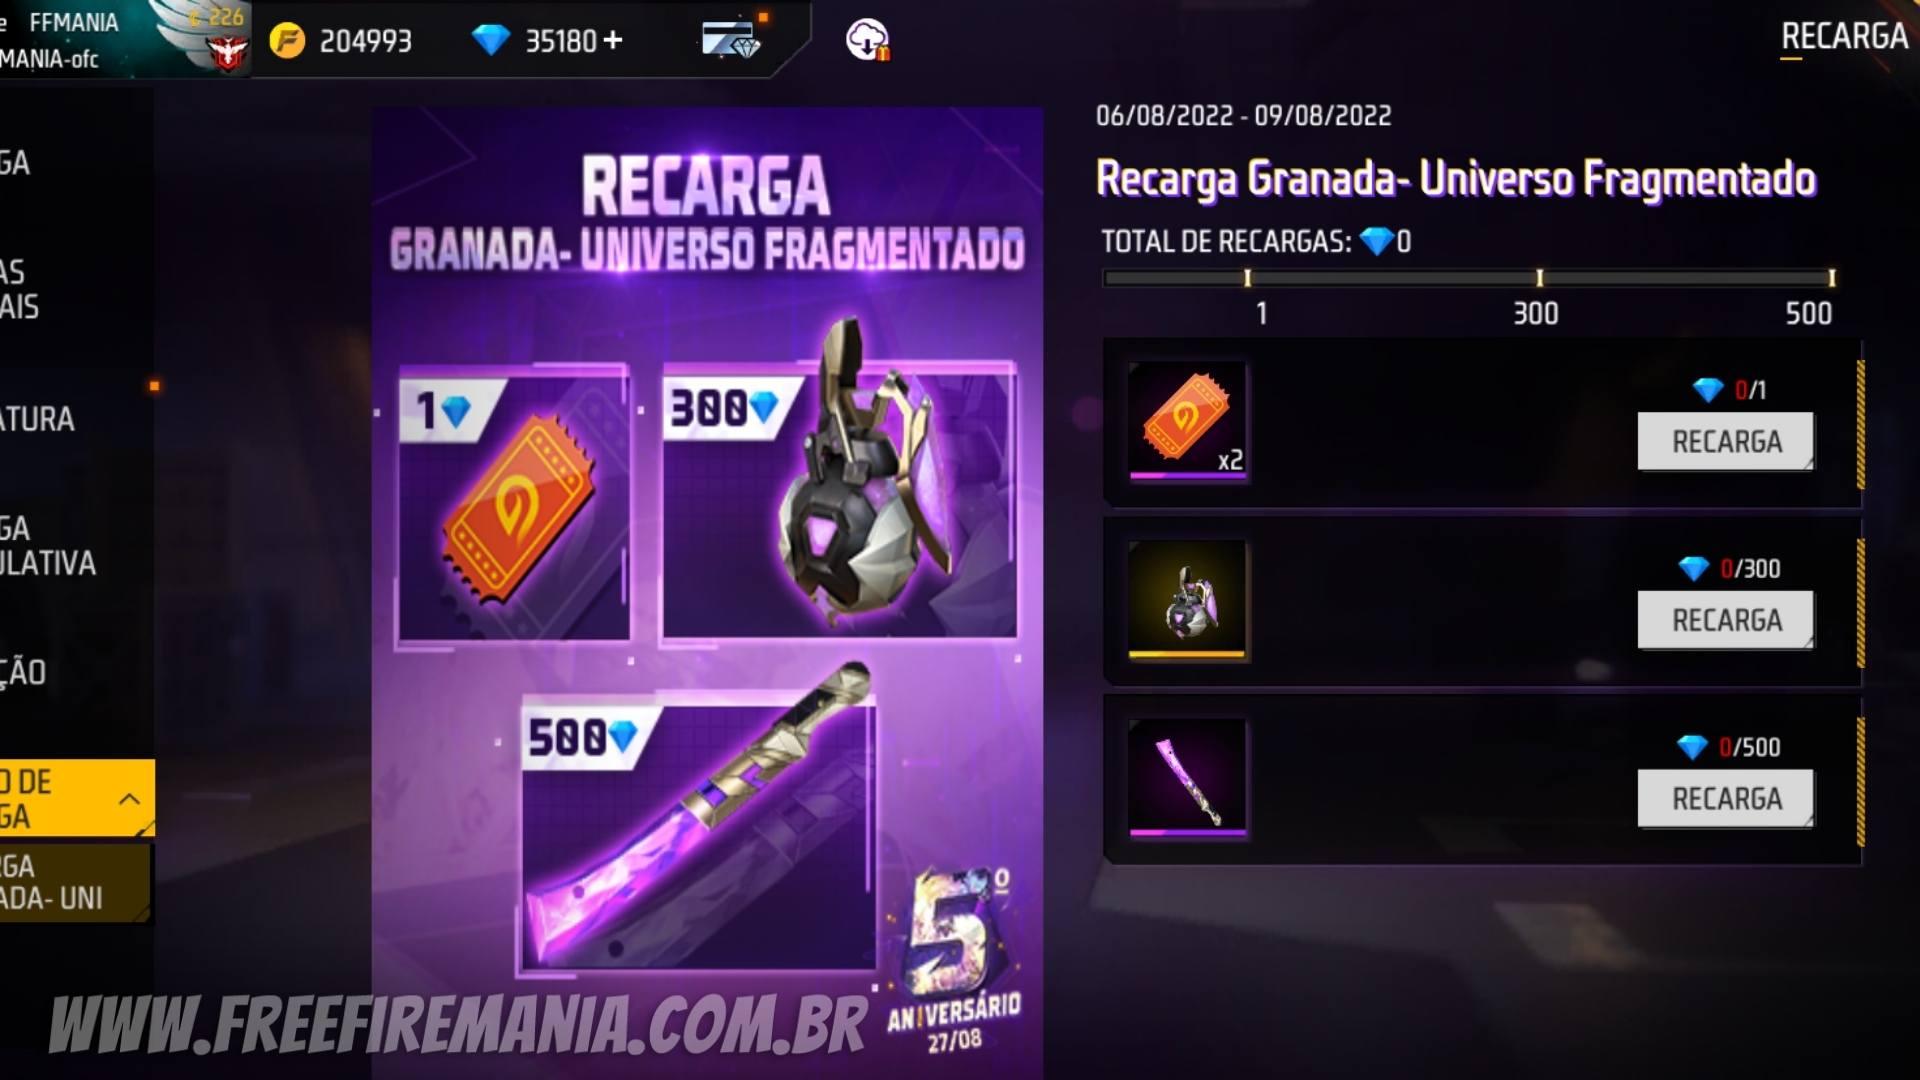 Recarga Free Fire: 6 de agosto (2022); recompensa Granada - Universo Fragmentado